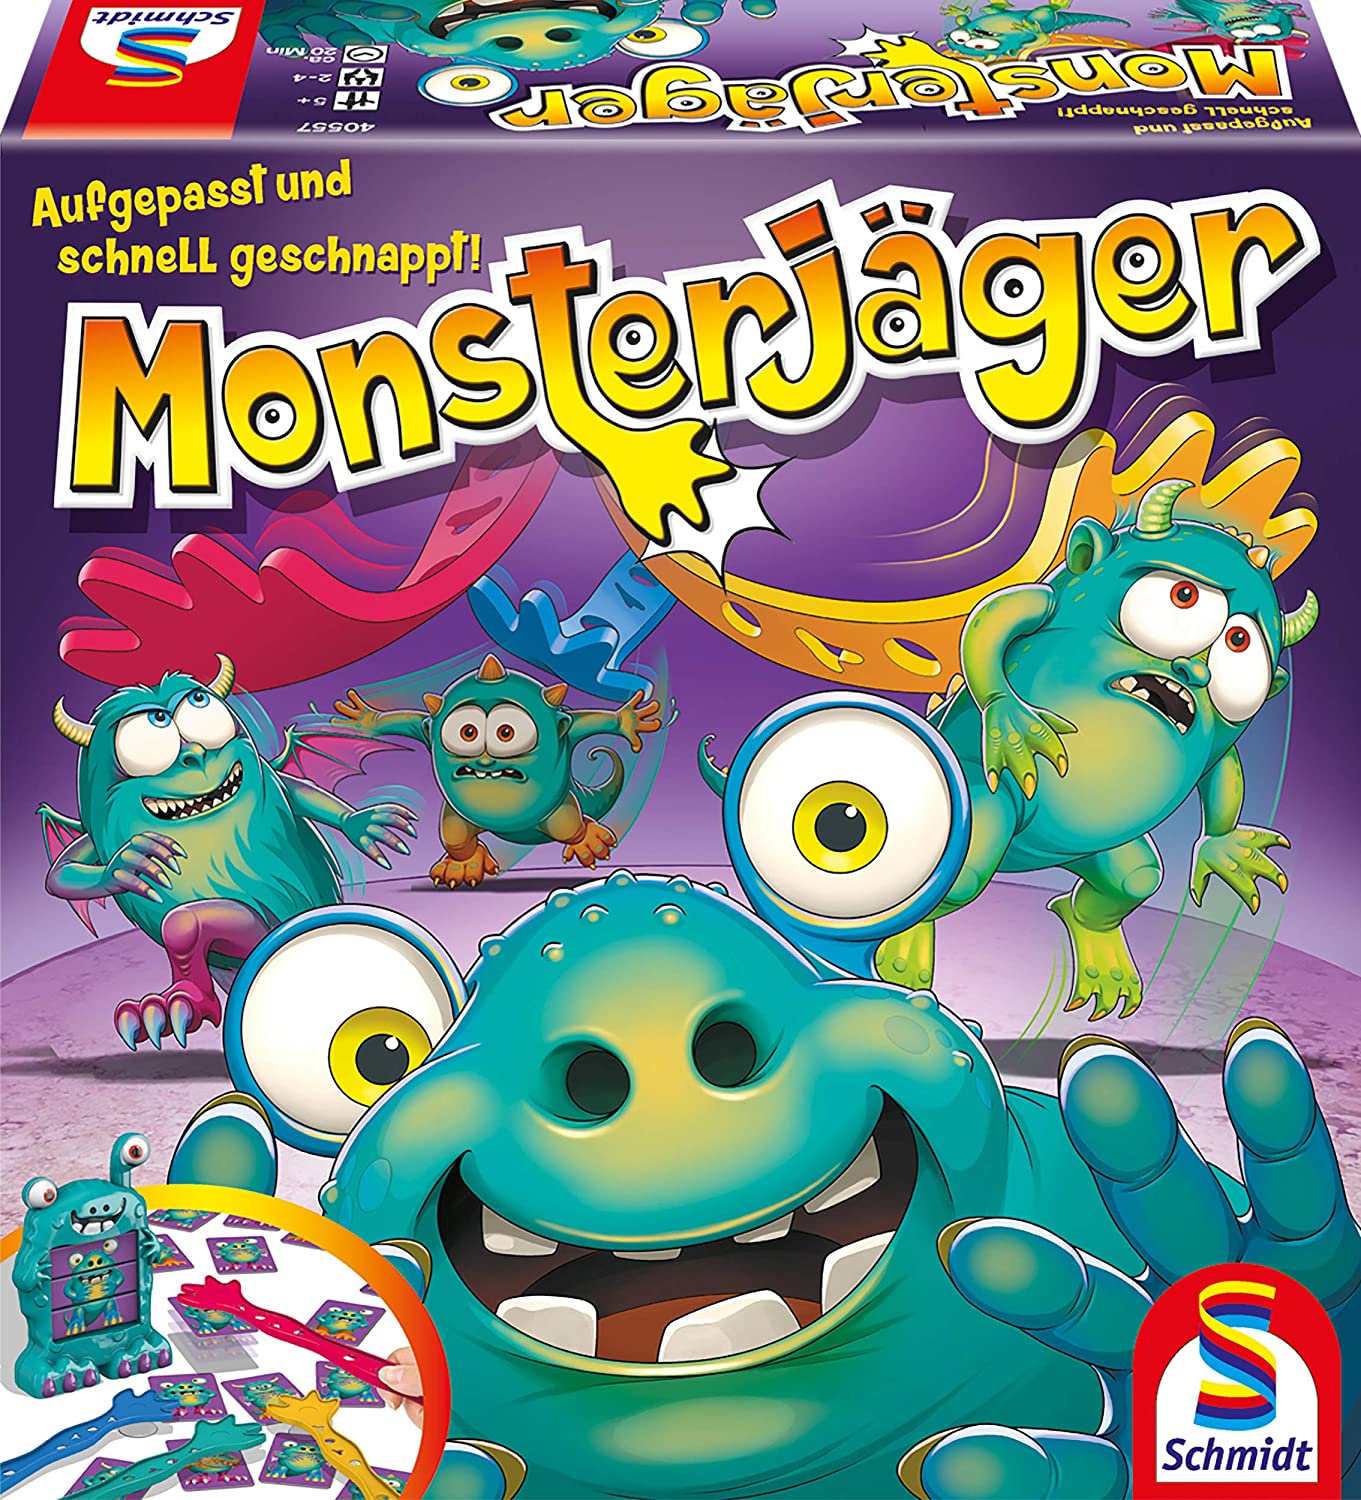 Bild zu Schmidt Spiele 40557 Monsterjäger für 9,99€ (Vergleich: 14,94€)